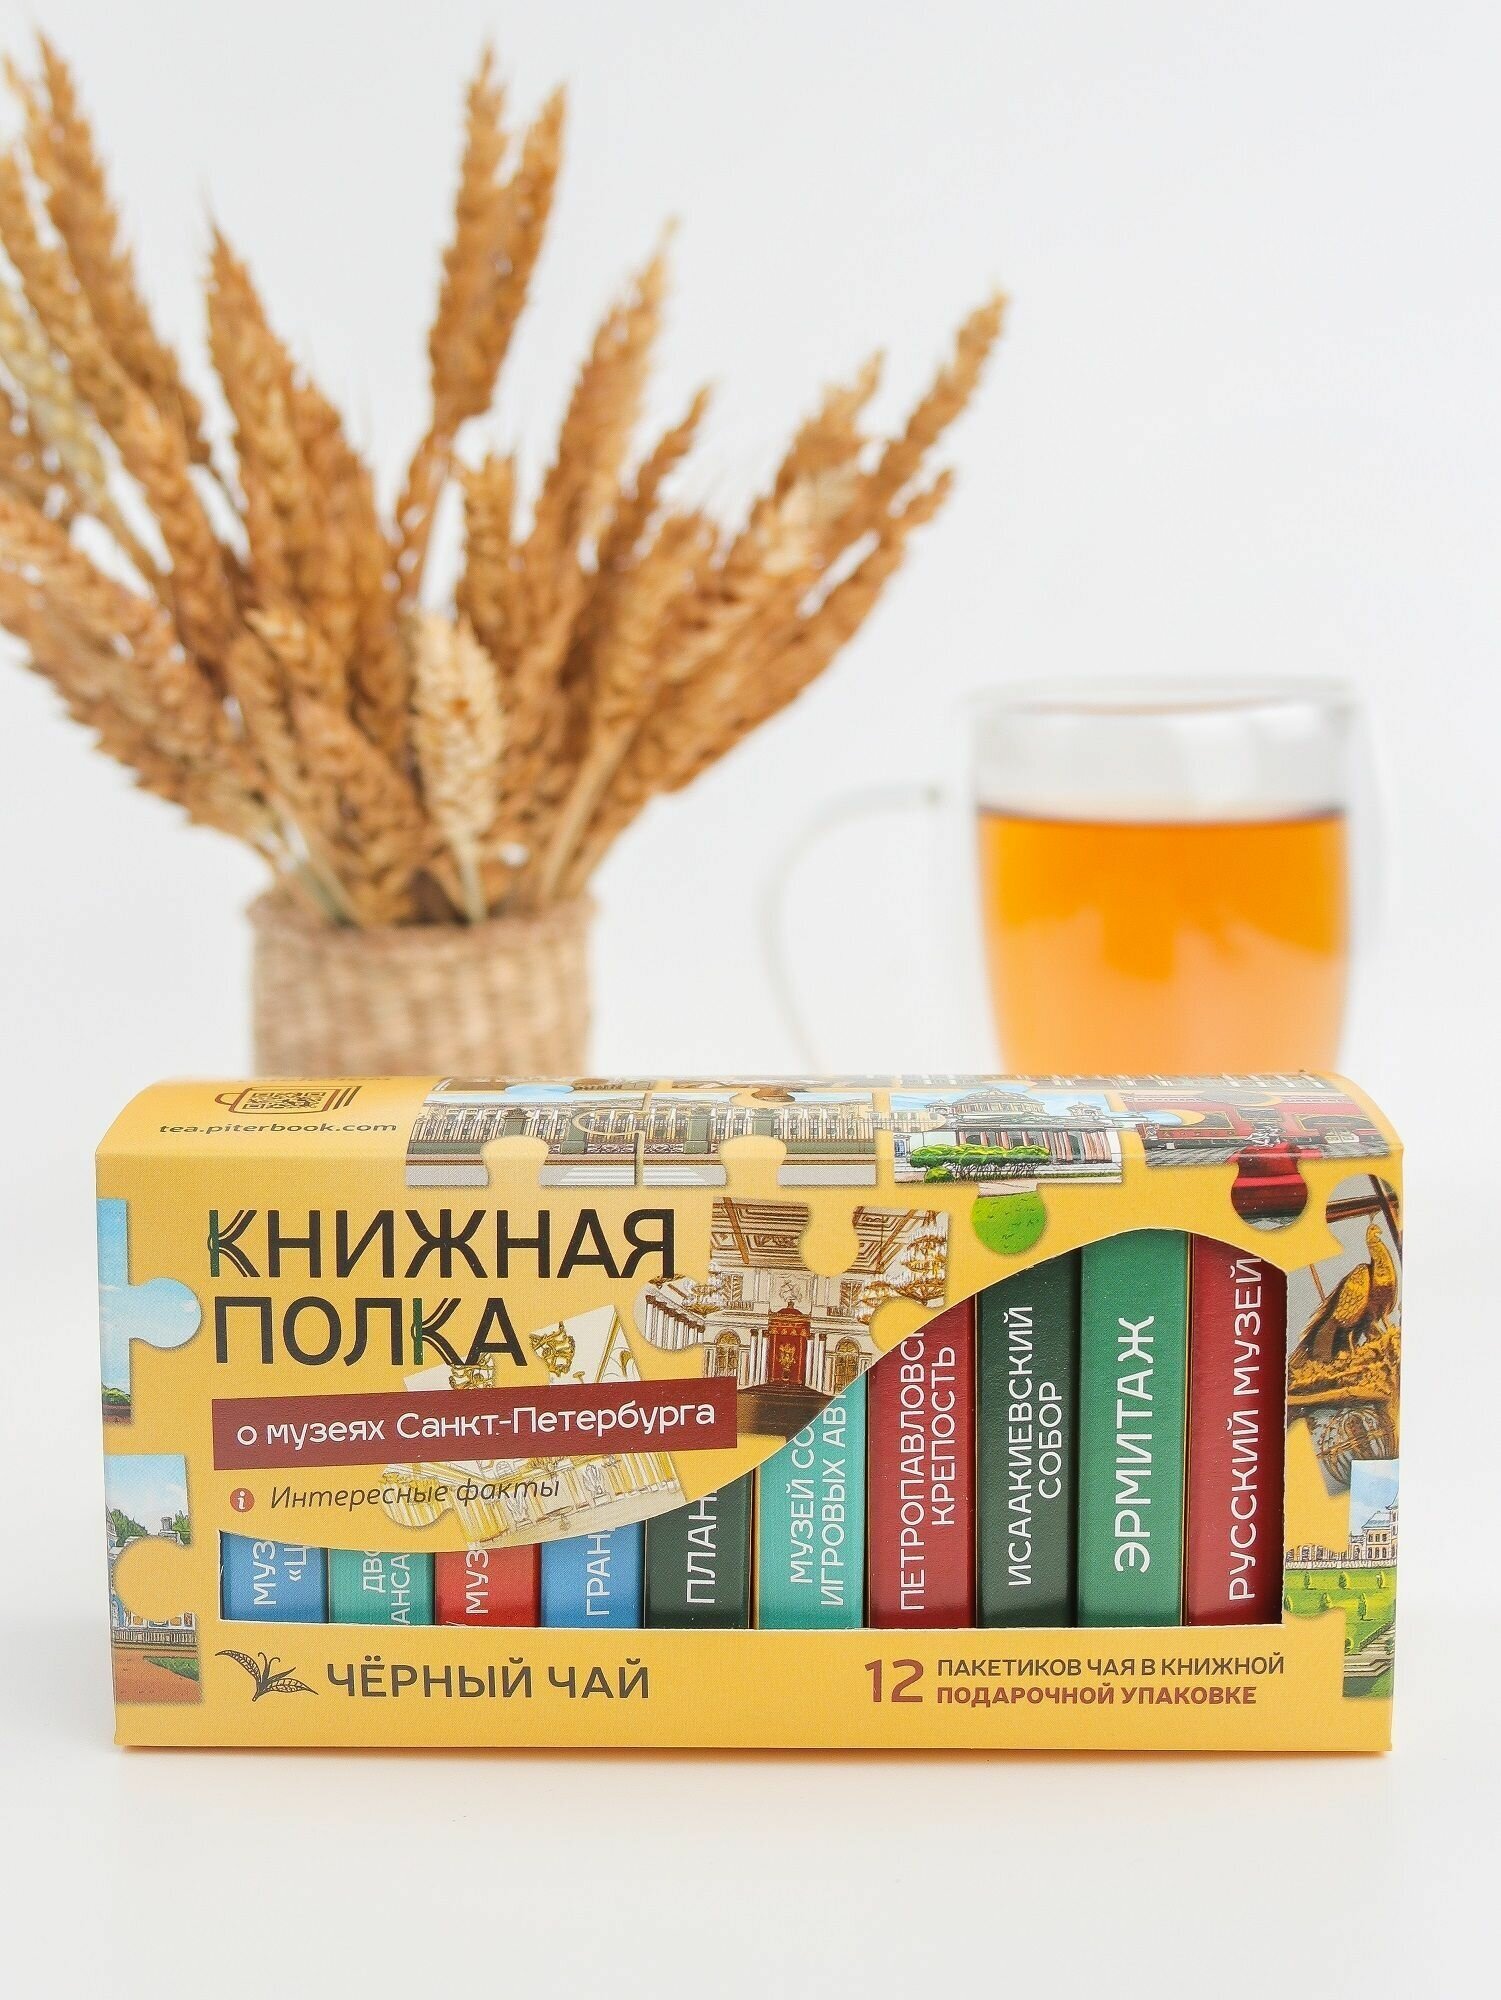 Чай со смыслом книги в пачке чая "Книжная Полка о музеях Санкт-Петербурга", чай черный подарочный